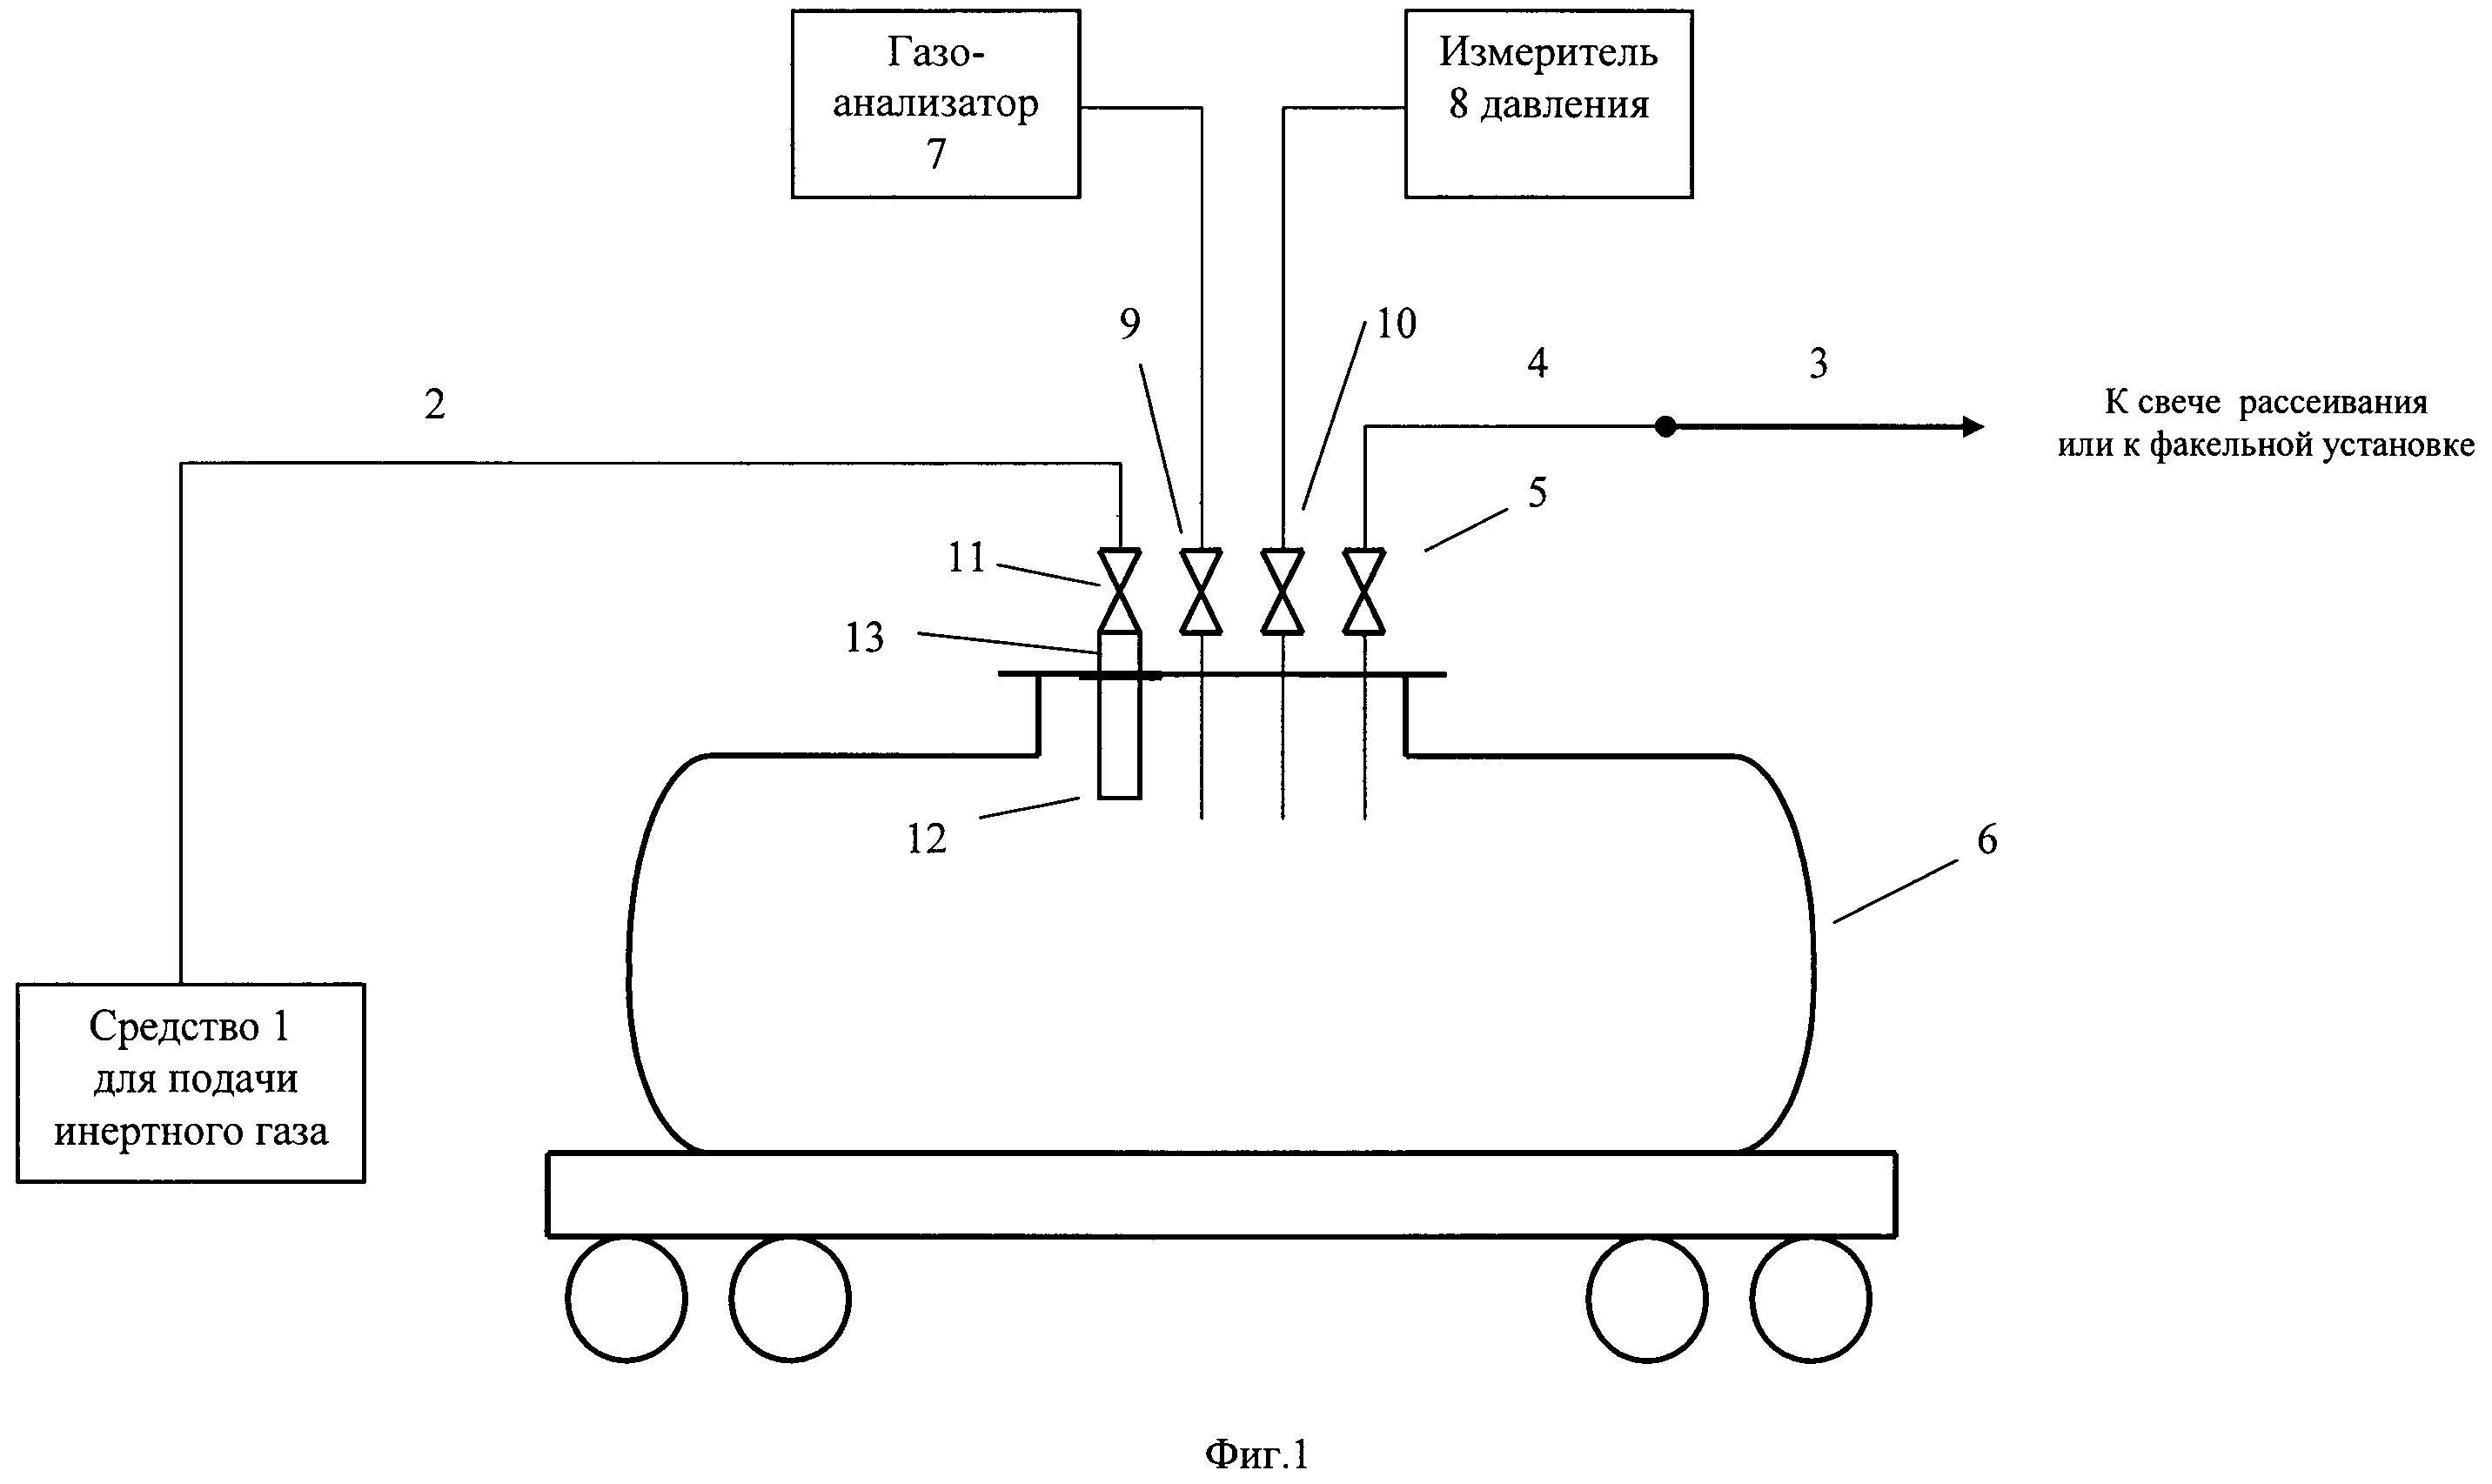 Способ подготовки железнодорожного вагона-цистерны к ремонту или наливу сжиженного углеводородного газа и устройство для его реализации